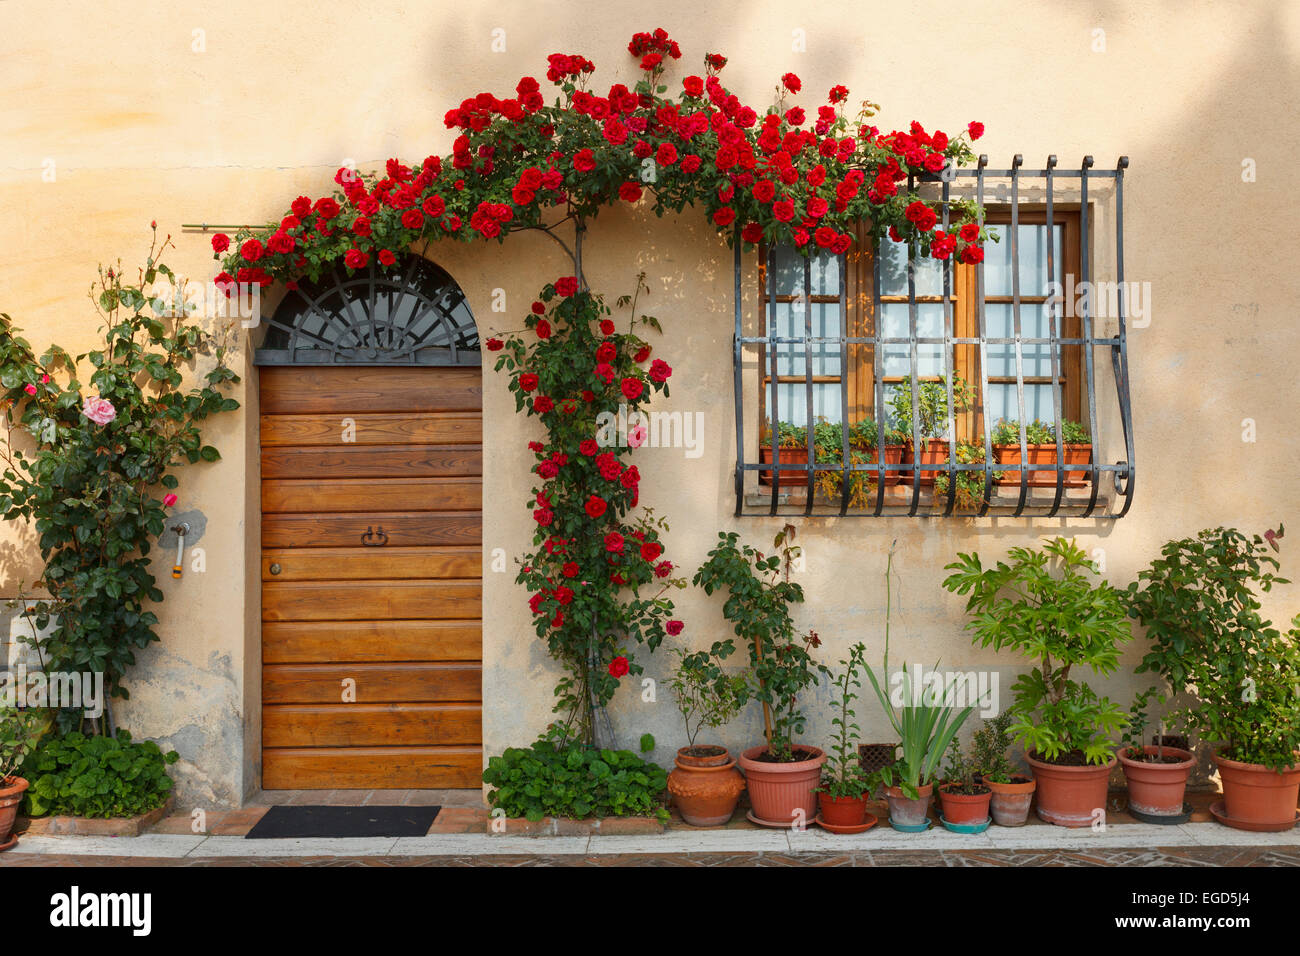 Porte avec roses, Montepulciano, province de Sienne, Toscane, Italie, Europe Banque D'Images